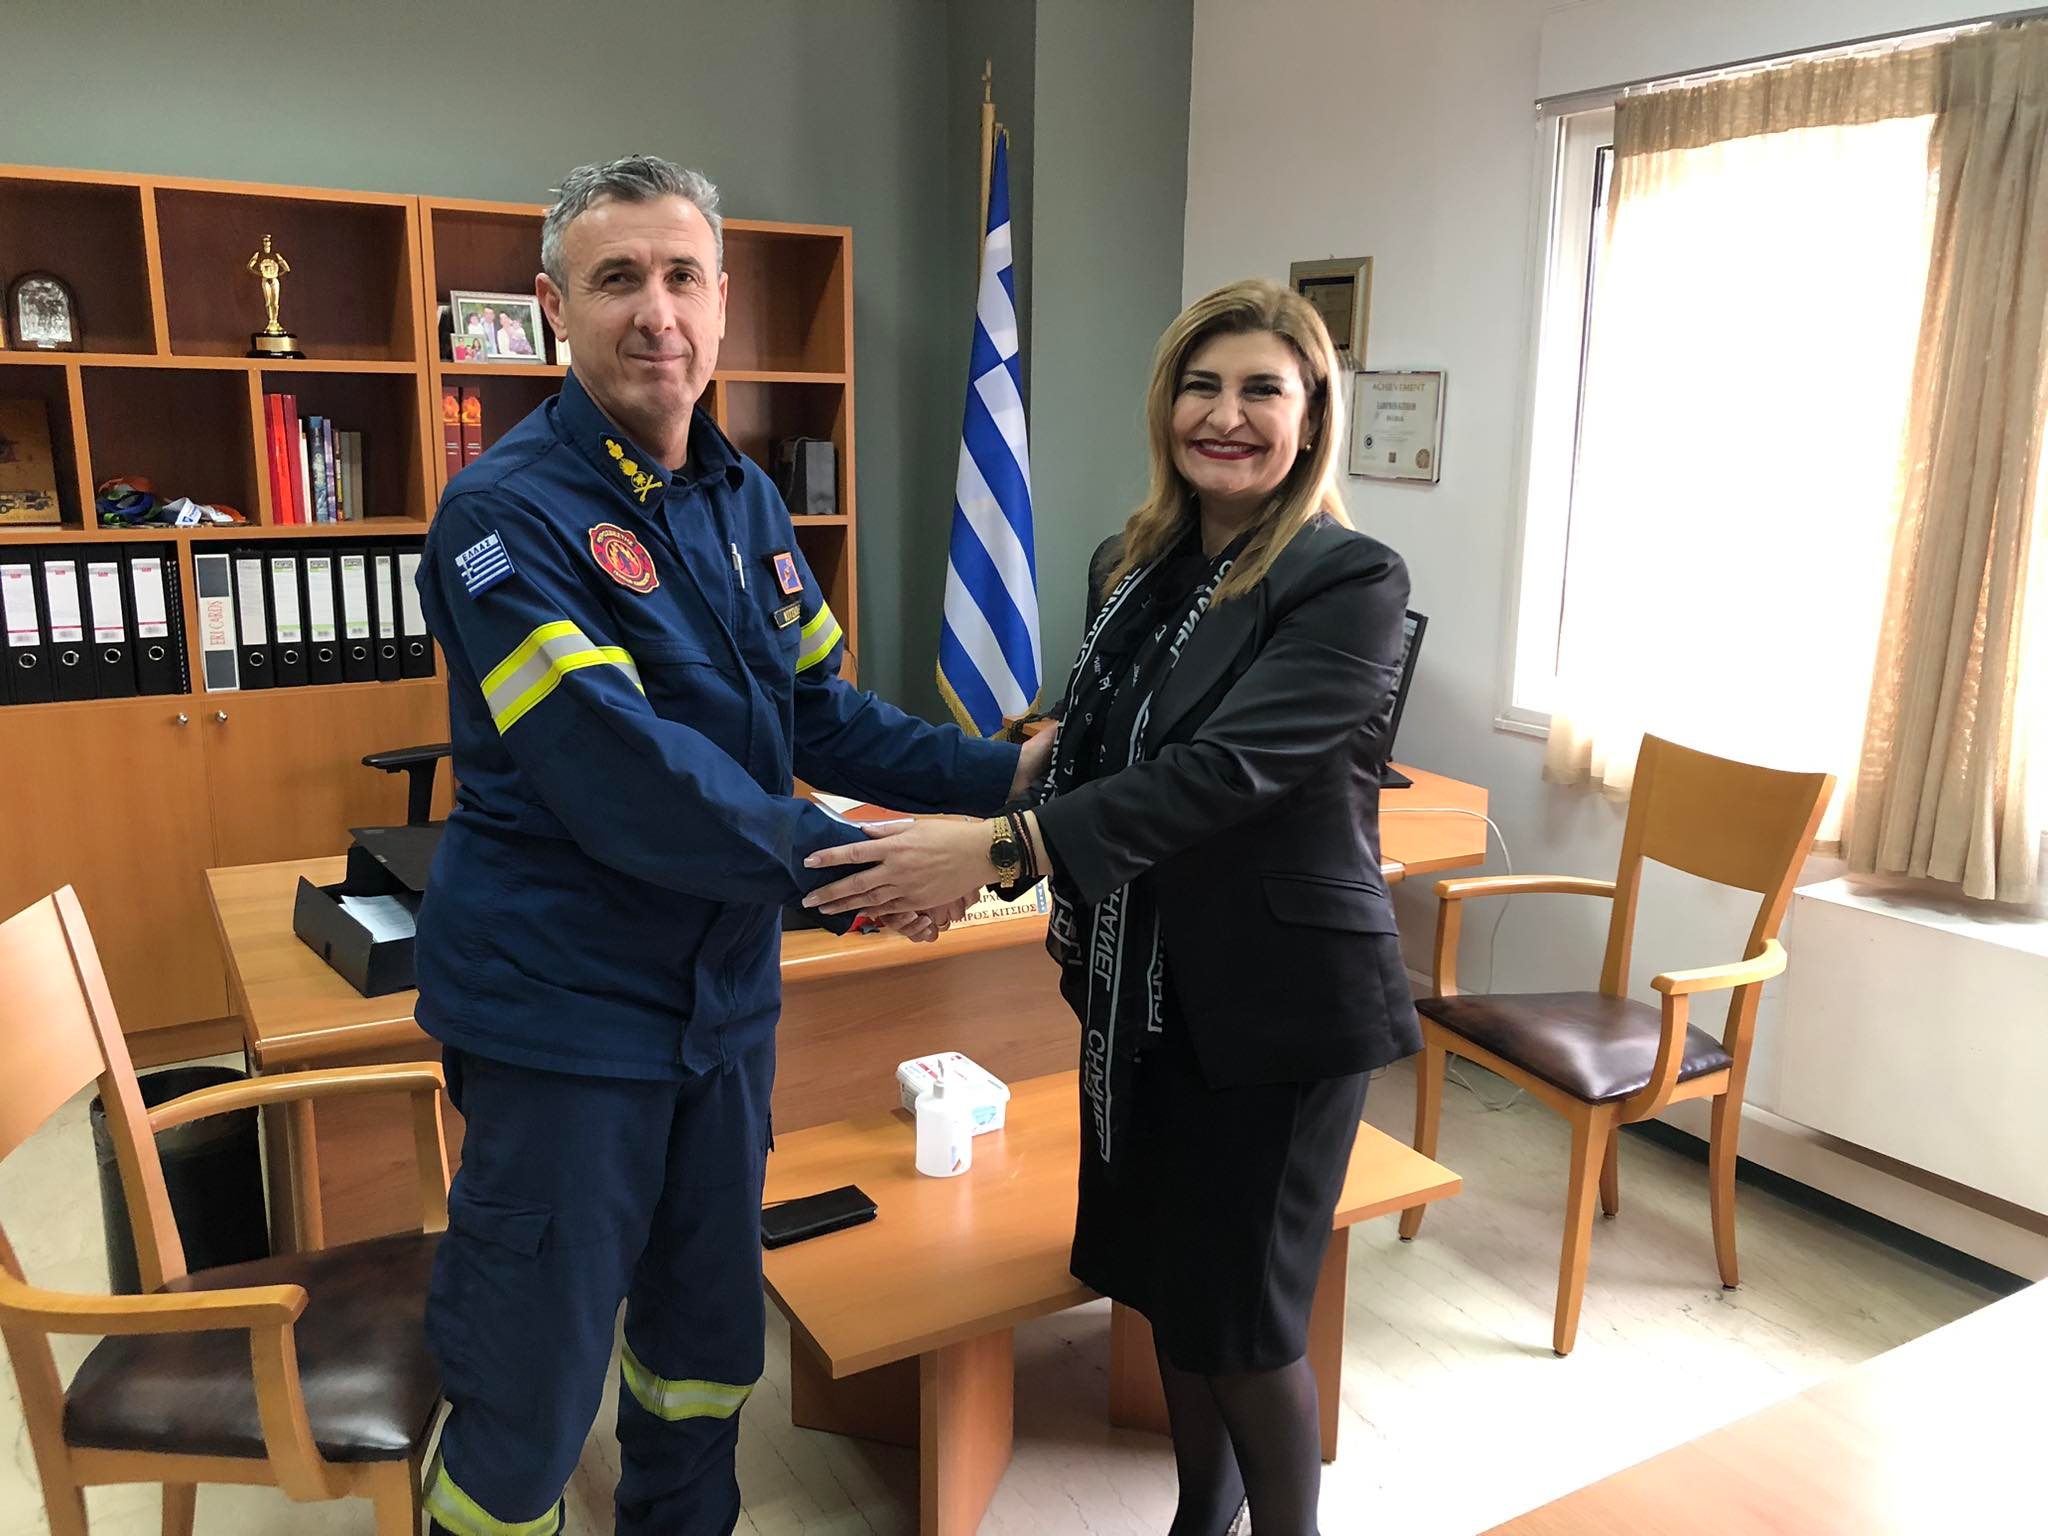 Ε. Λιακούλη: "Ευχές και θεσμική συνεργασία με τους επικεφαλής της Πυροσβεστικής"